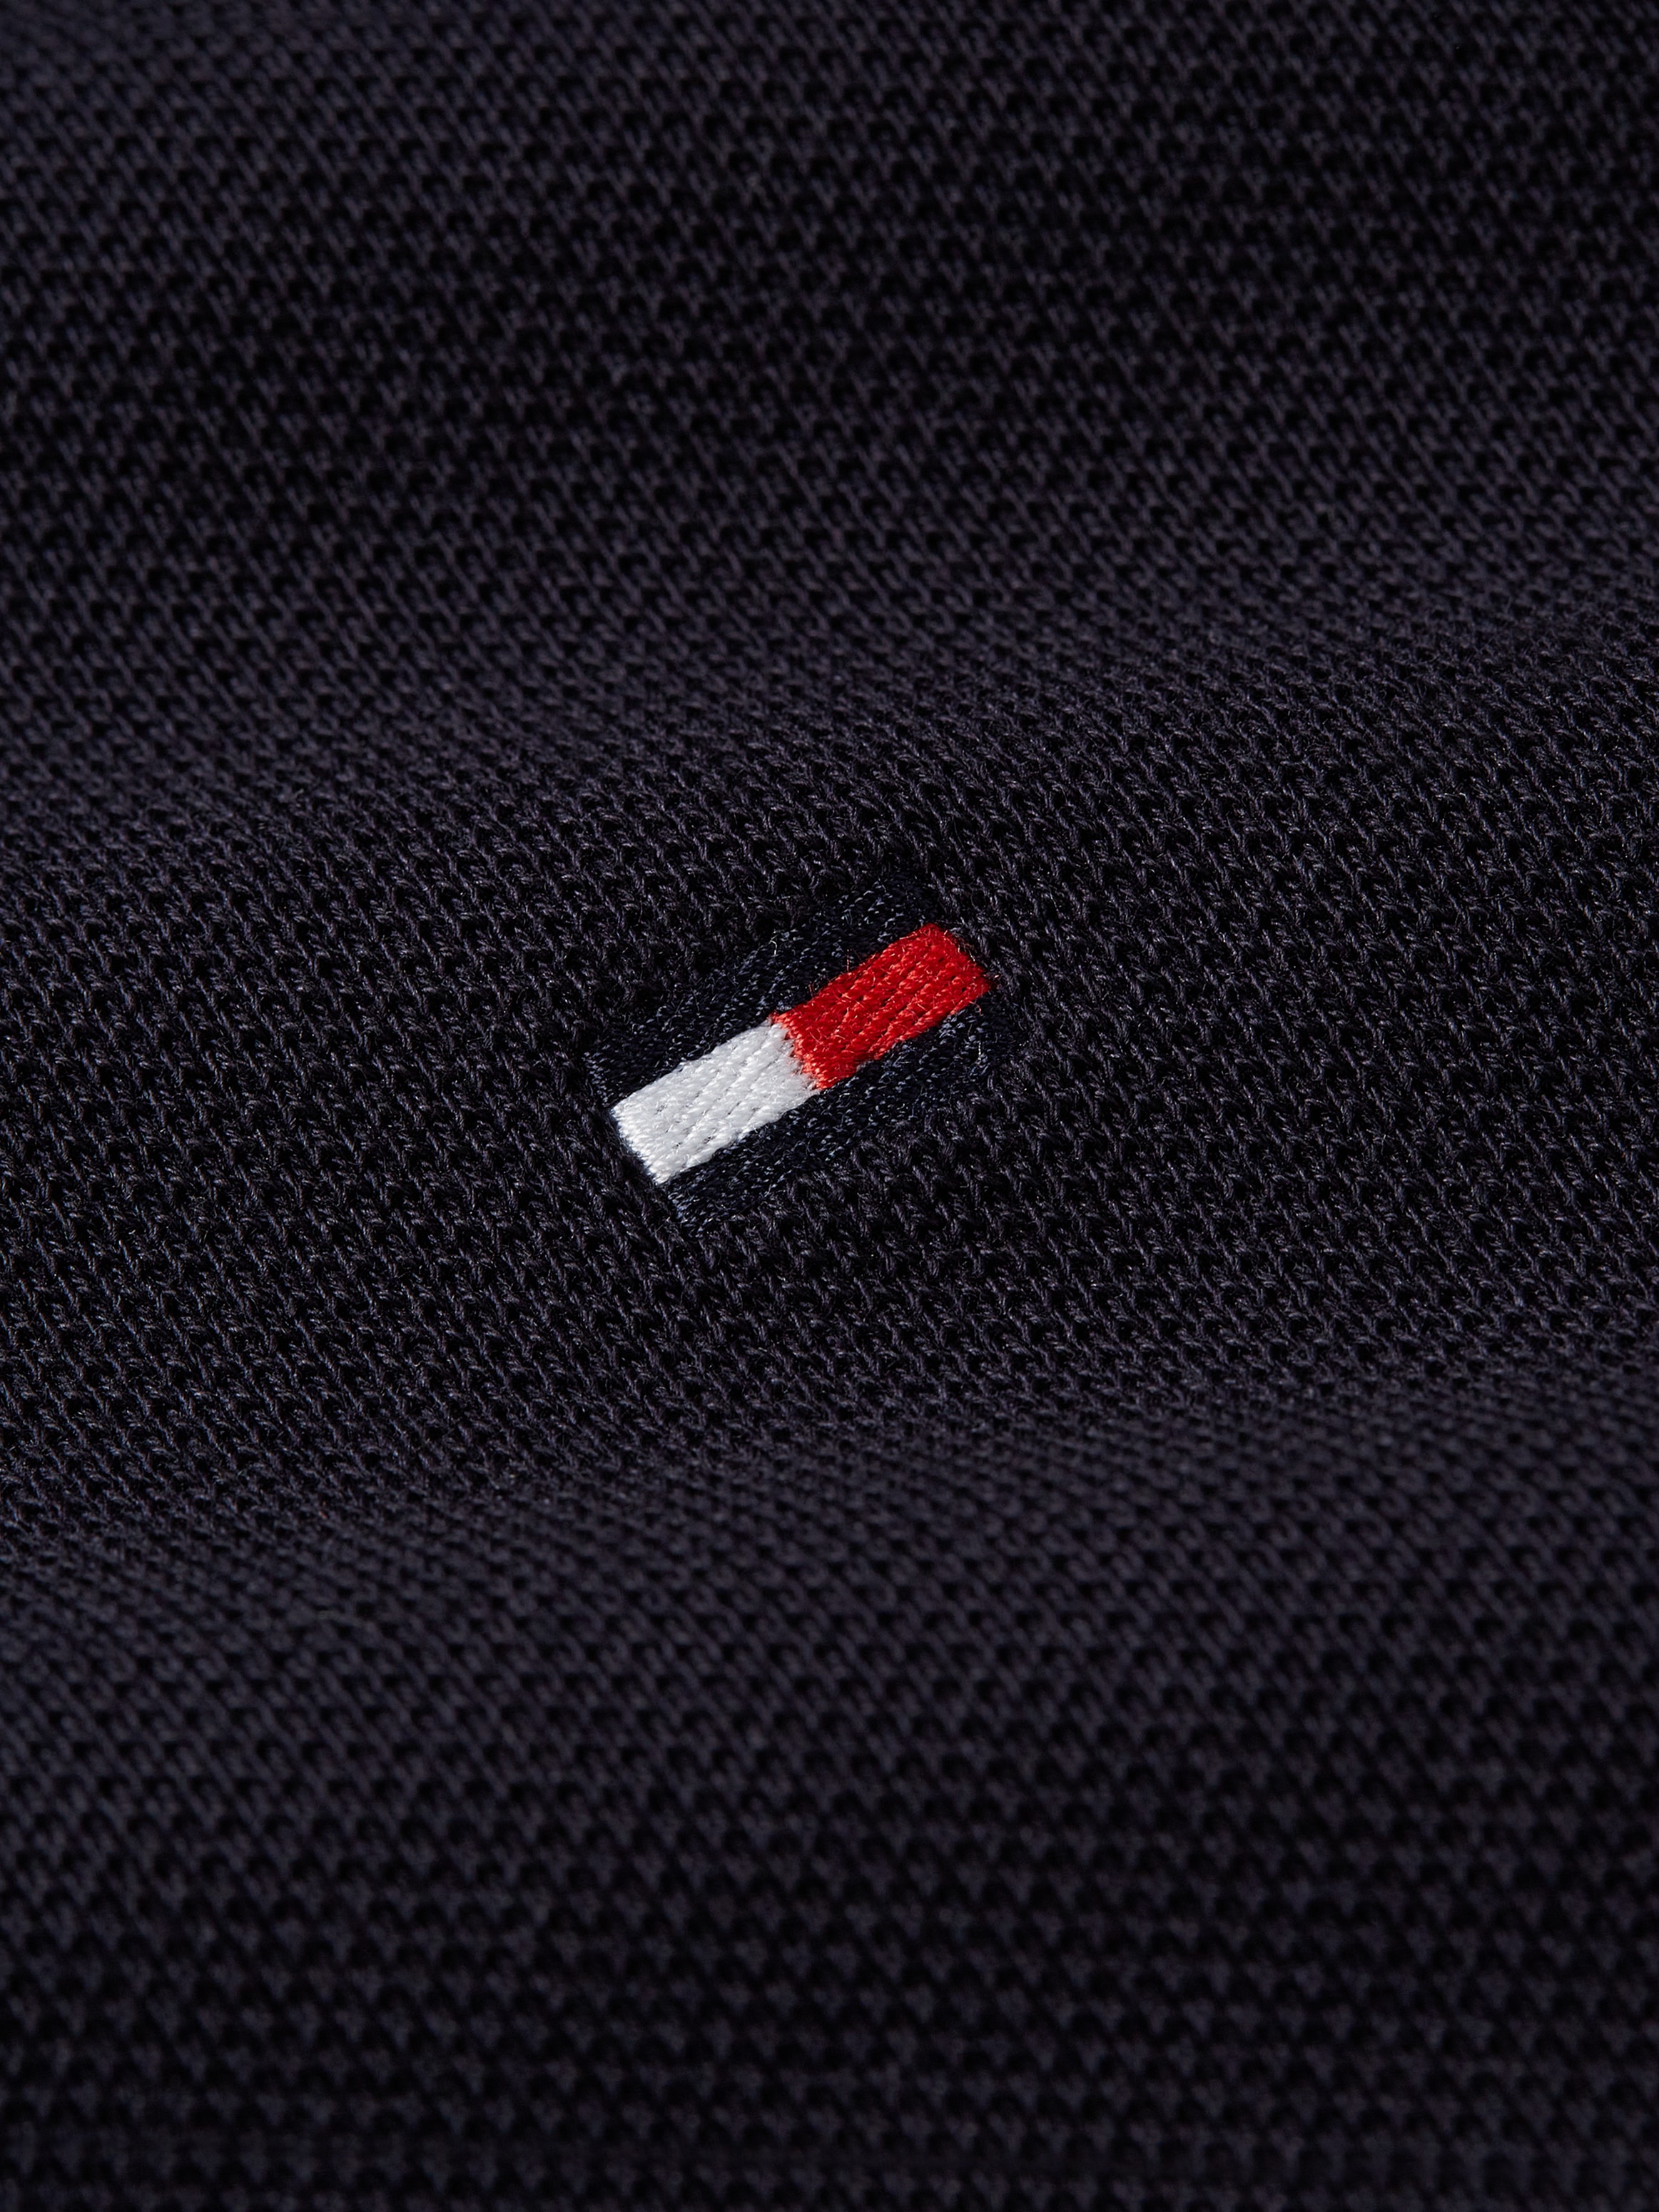 Tommy Hilfiger Poloshirt »SHADOW GS REG POLO«, Streifen in Tommy Farbe auf der Schulter